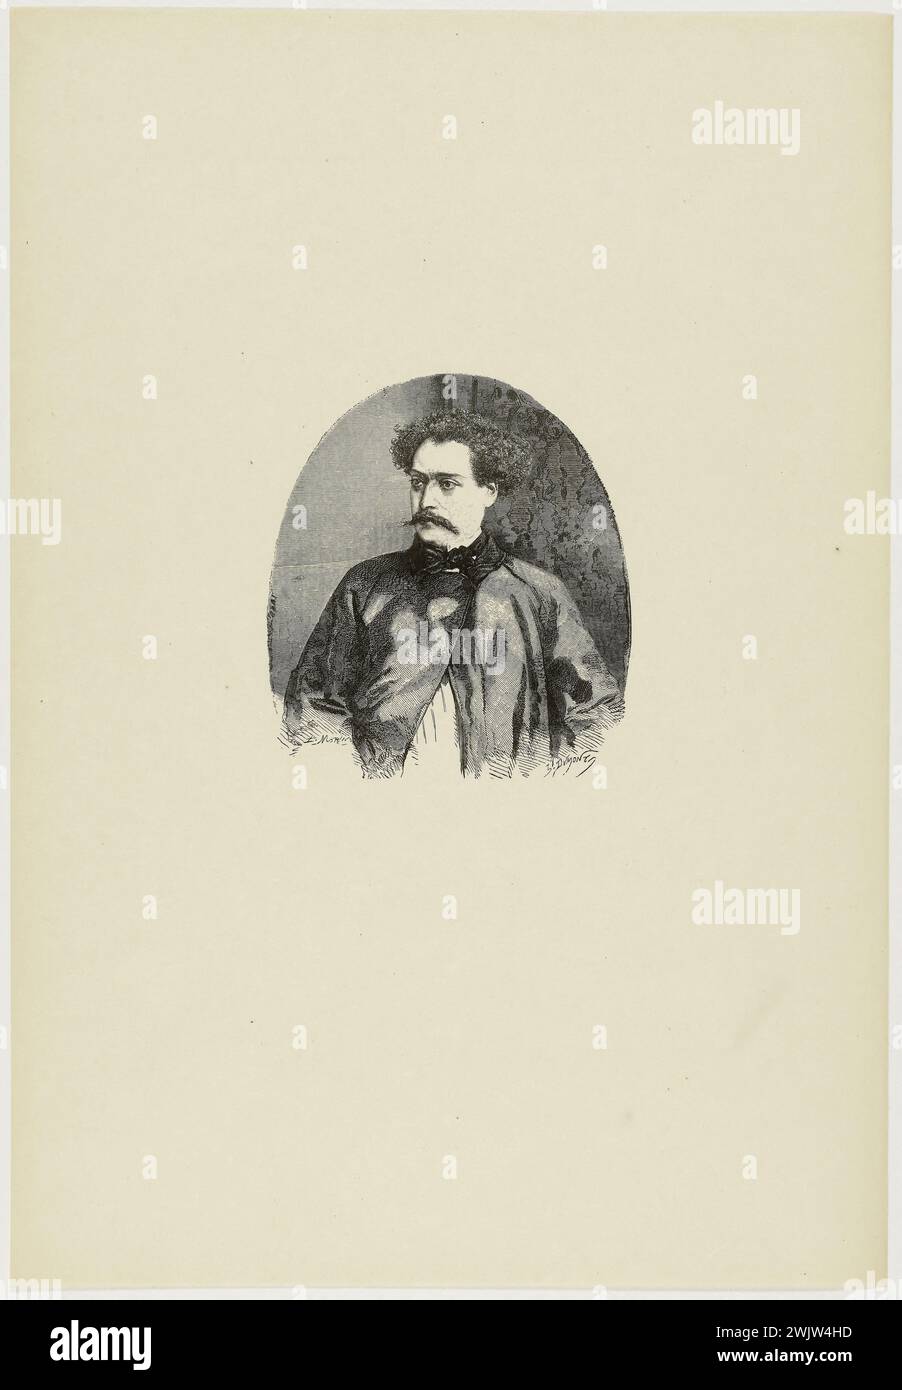 Edmond Morin (1824-1882) Alexandre Dumas, fils (1824-1895), écrivain français. Bois, 1859. Musée des Beaux-Arts de la ville de Paris, petit Palais. Écrivain, écrivain français, portrait, gravure Banque D'Images